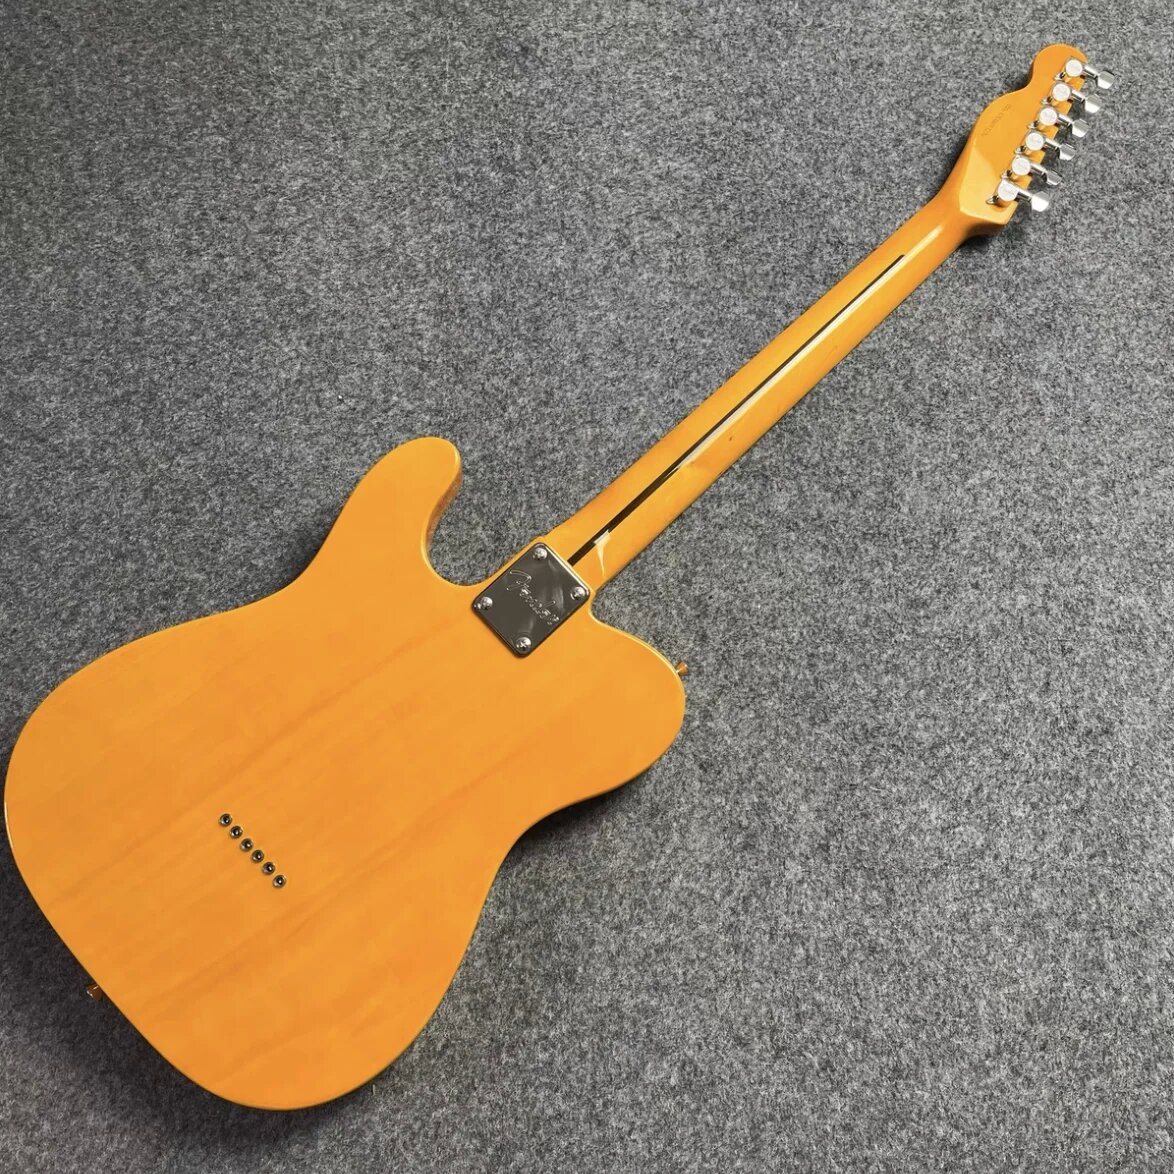 Klasik açık sarı şeffaf sarı elektro gitarın miras alınması özelleştirilebilir ücretsiz gönderim